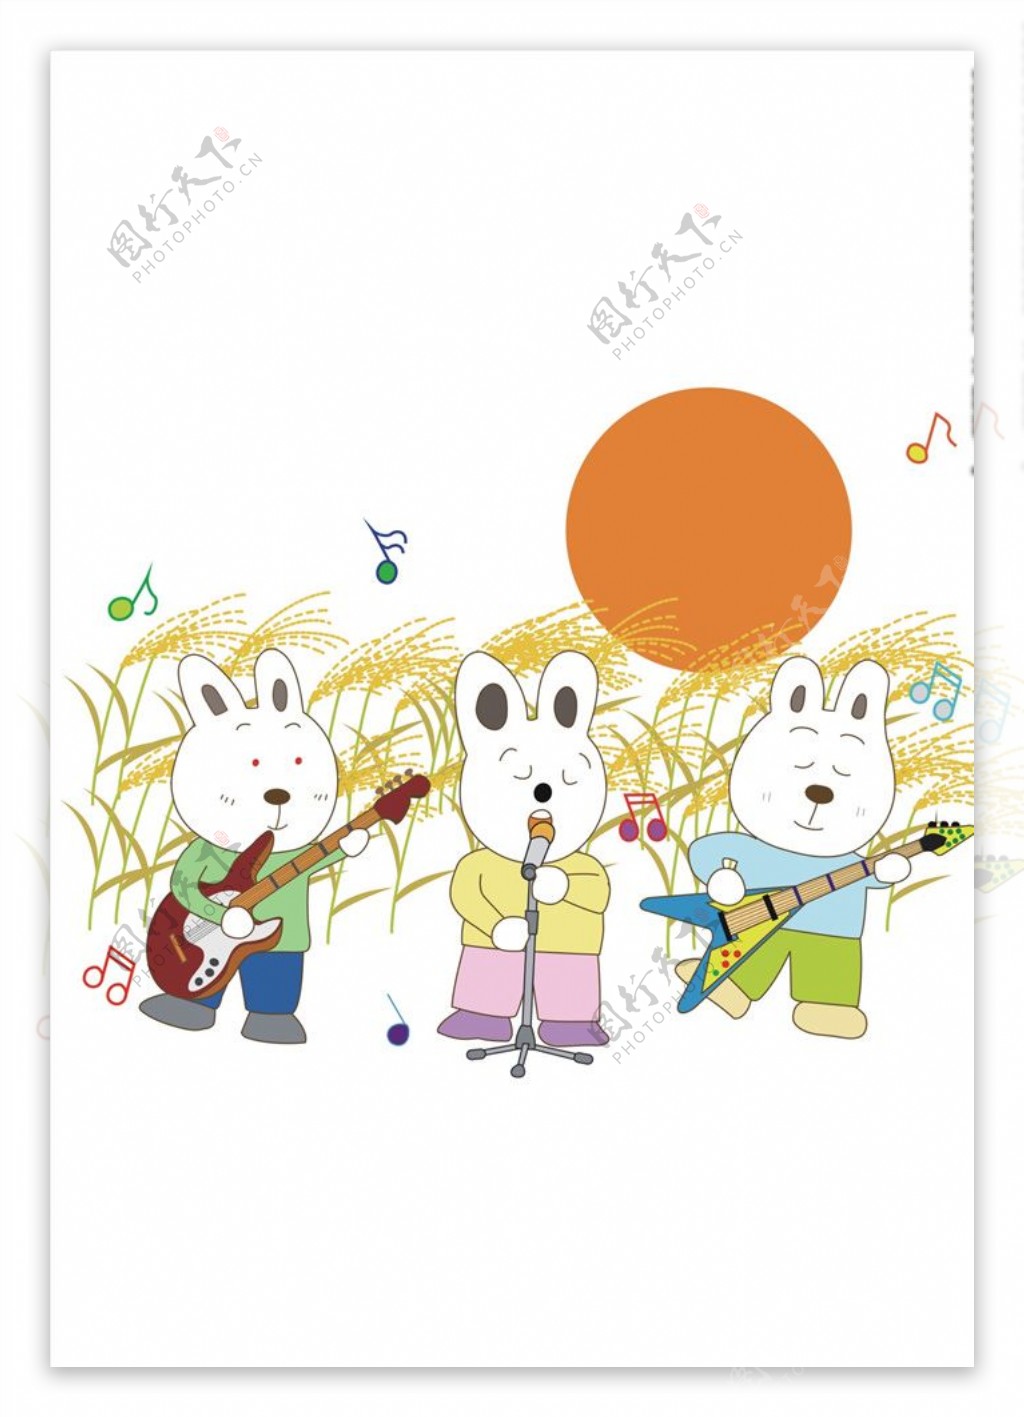 卡通兔子乐队矢量图下载